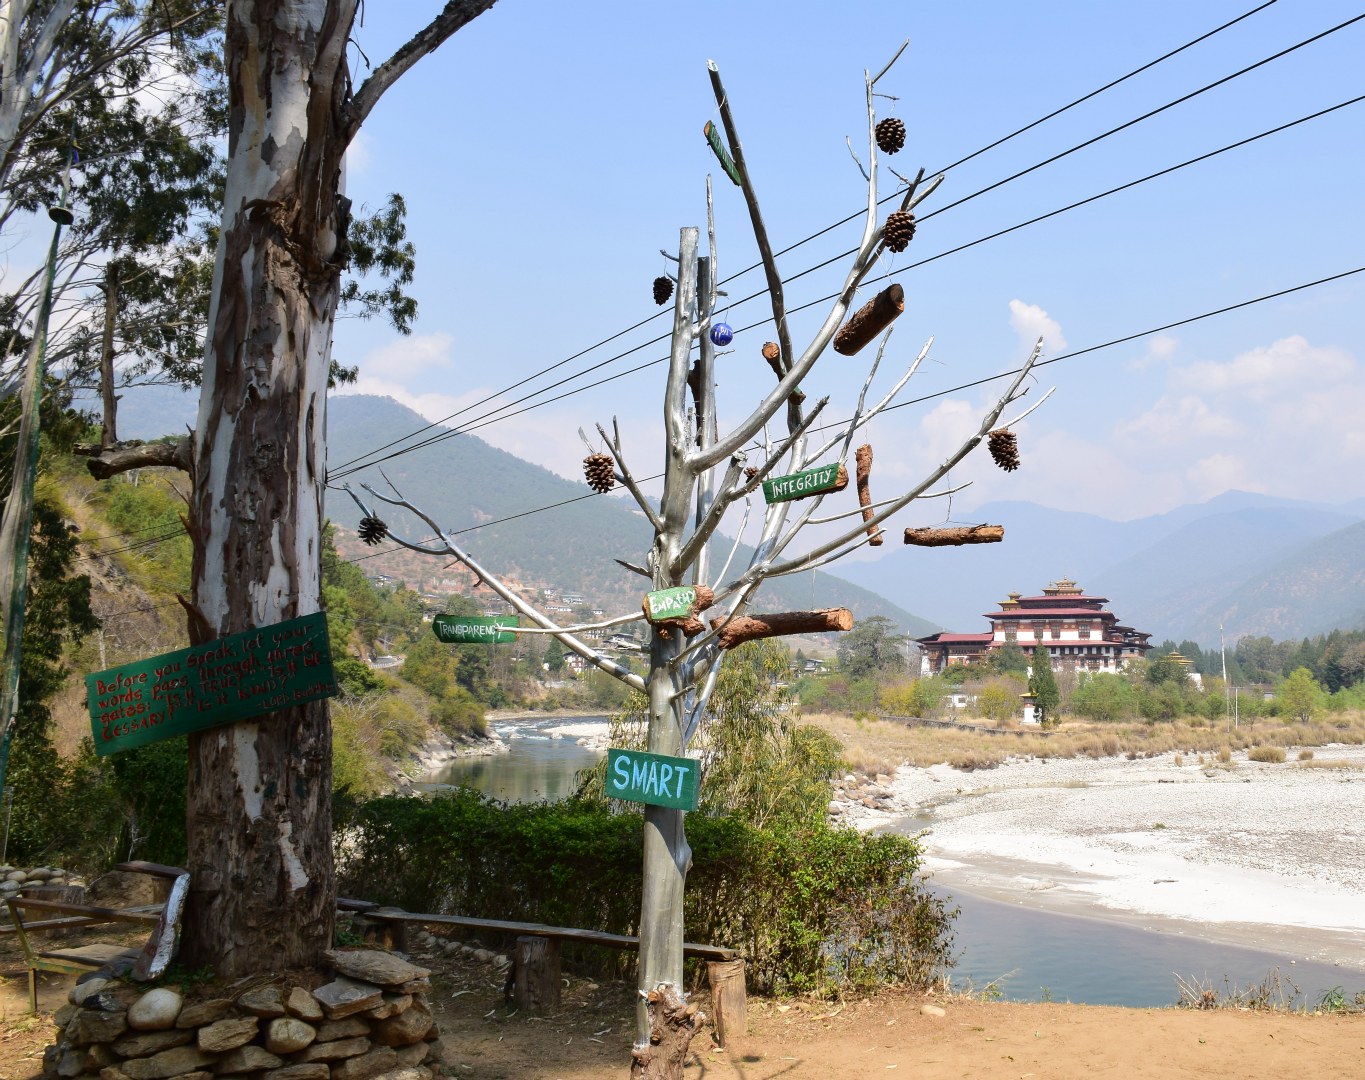 Inspirational Signs, Punakha